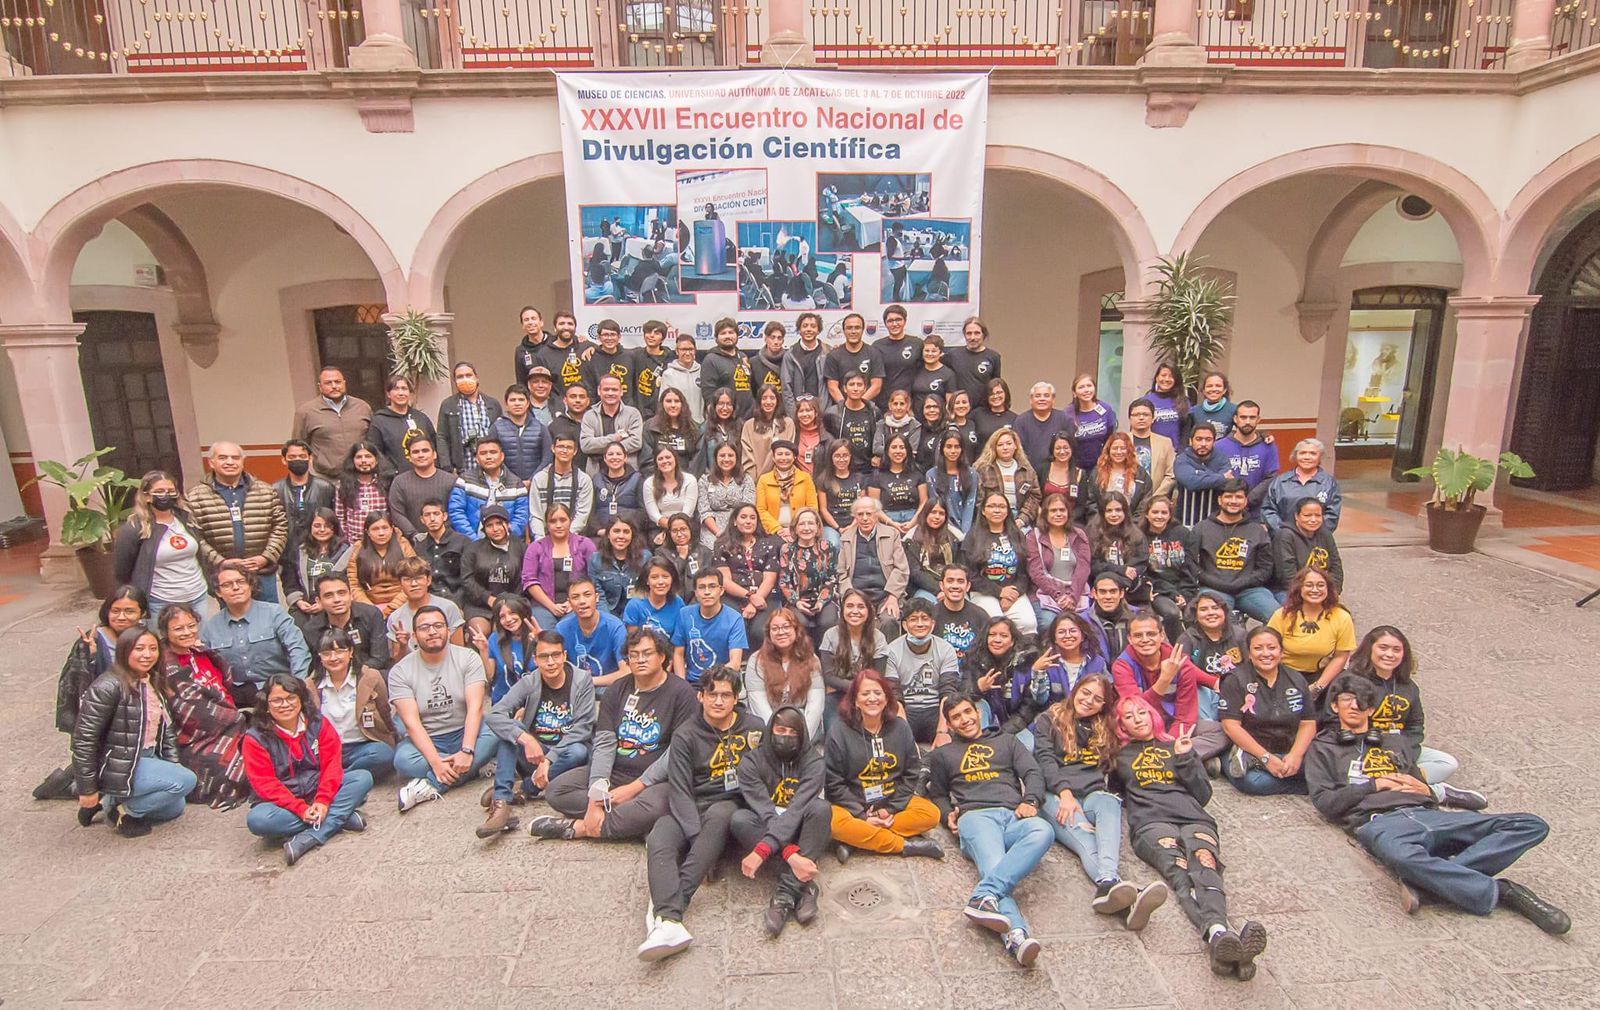 Más de 5 mil personas participaron en el XXXVII Encuentro Nacional de Divulgación Científica: García Guerrero
